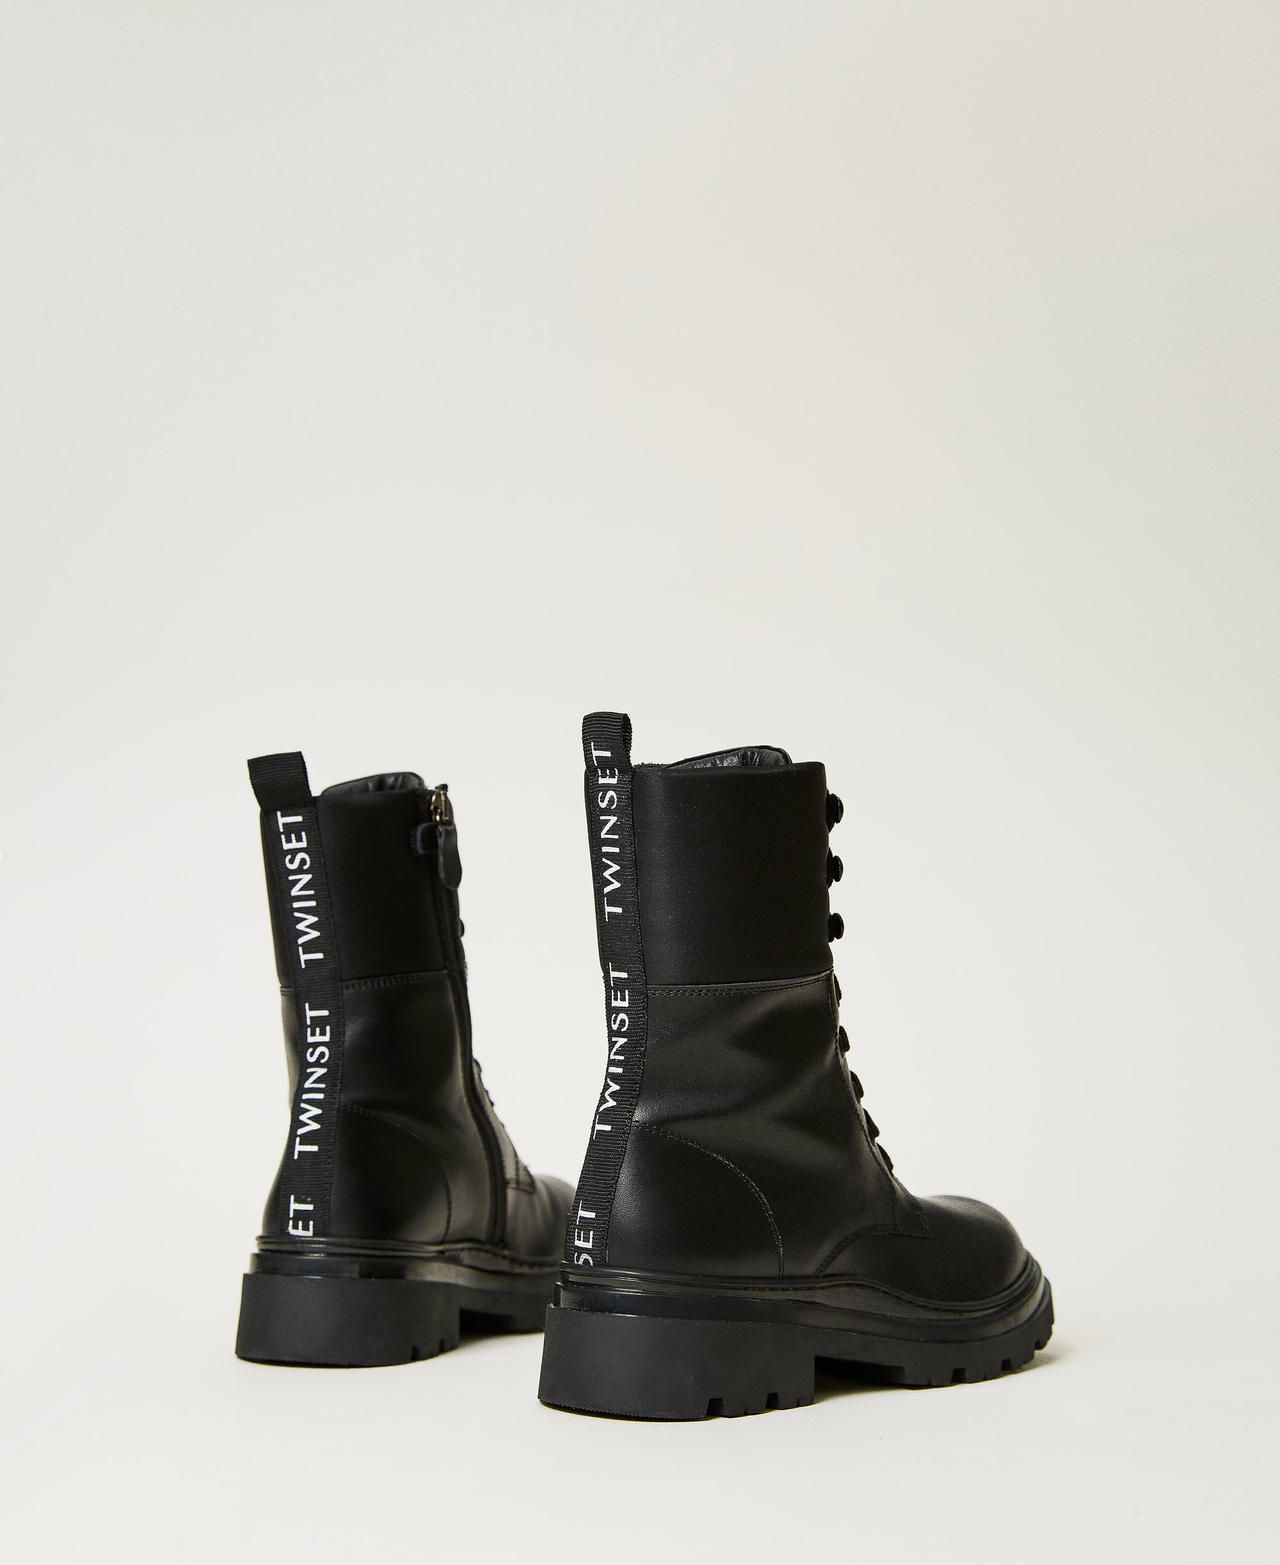 Кожаные ботинки-амфибии на шнуровке Черный Девочка 232GCJ034-03